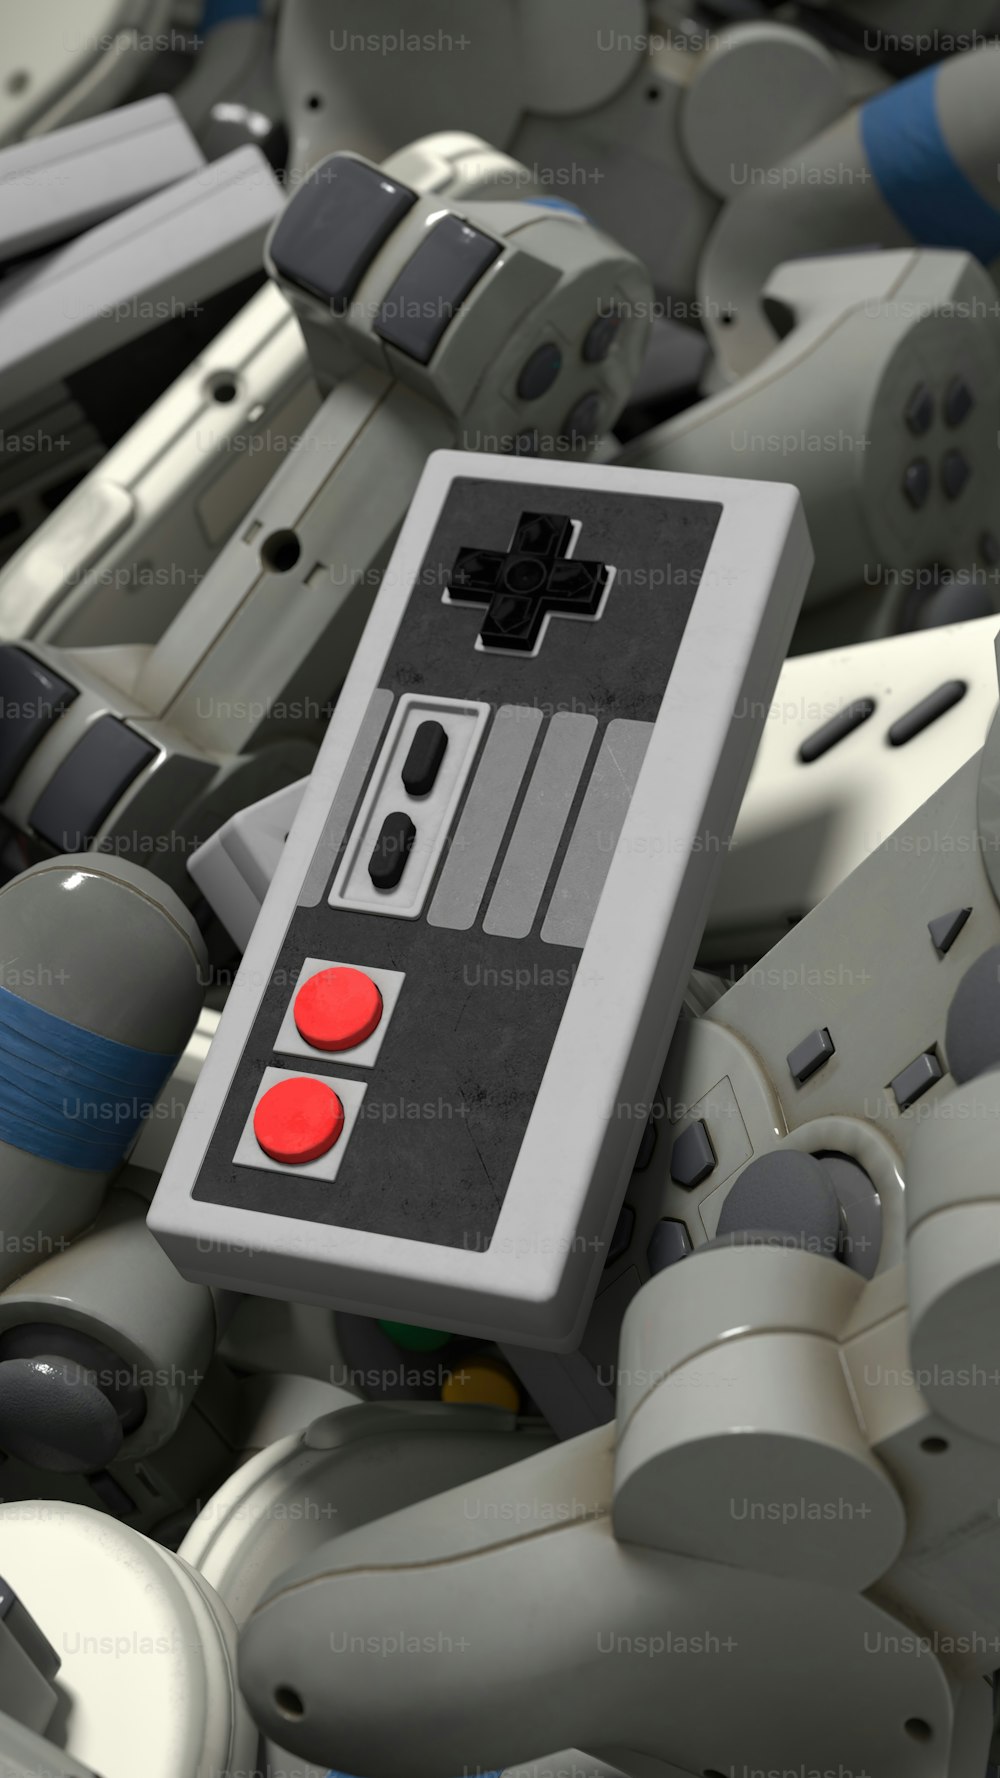 Eine Nahaufnahme eines Nintendo-Controllers, umgeben von anderen Nintendo-Controllern